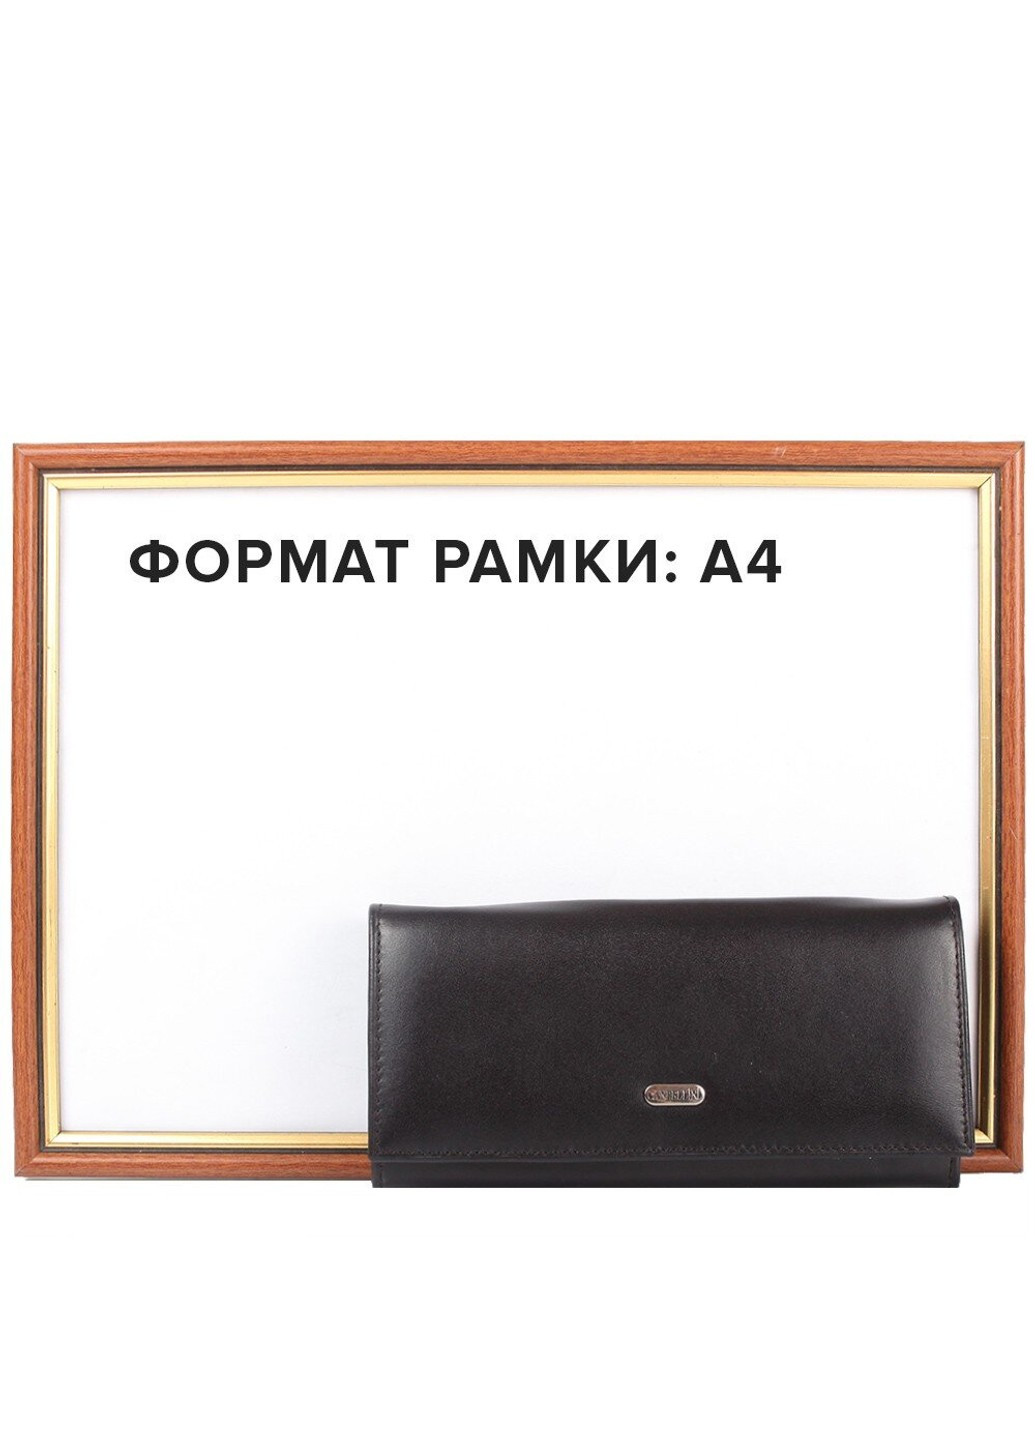 Женский кожаный кошелек SHI2036-1 Canpellini (262976717)